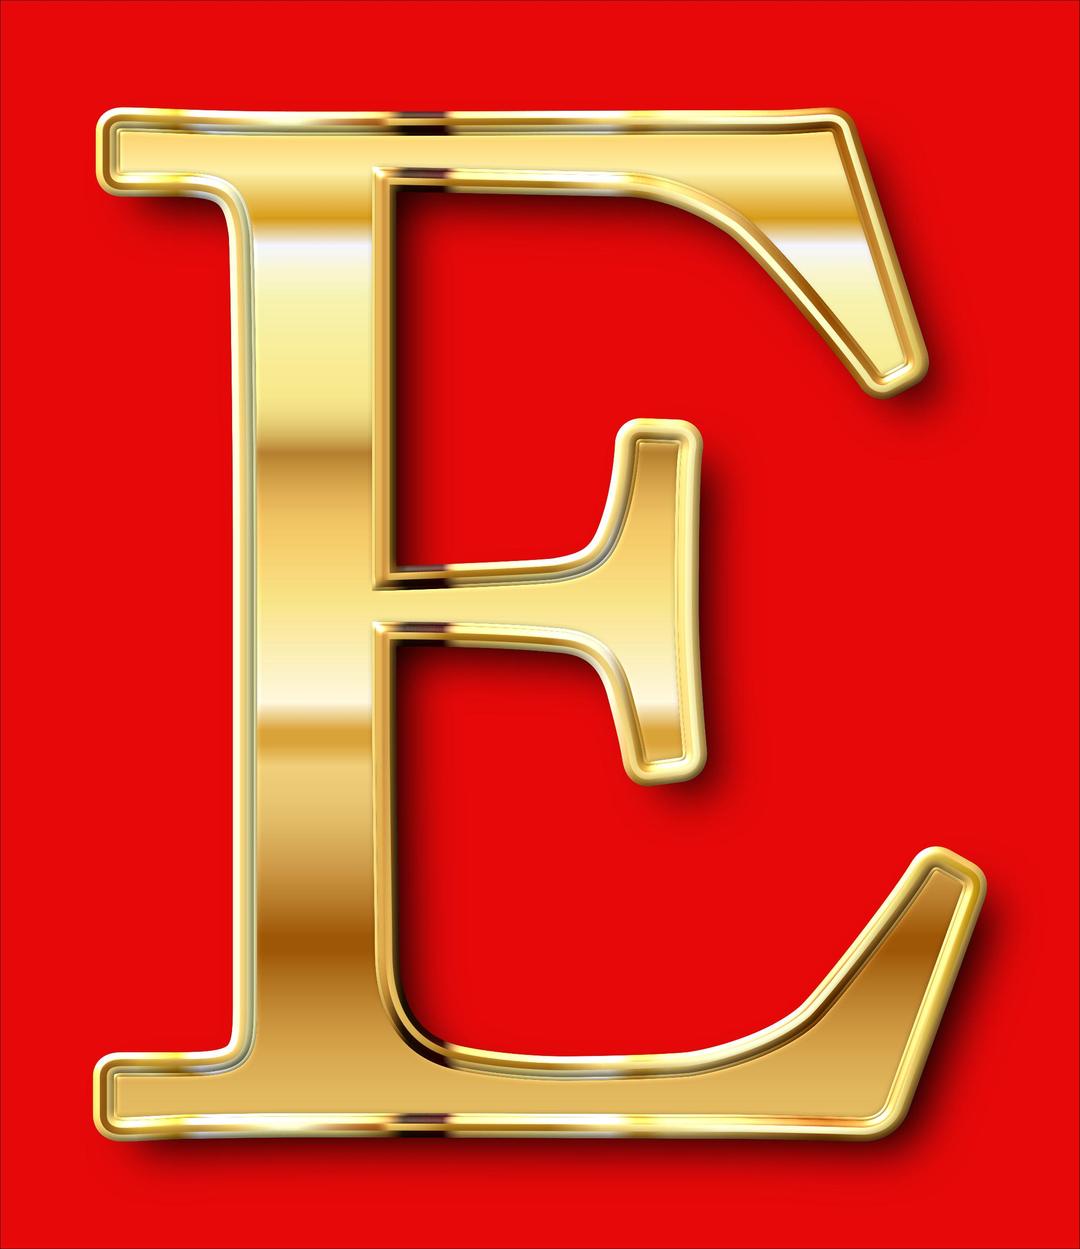 Golden E - For Edward png transparent